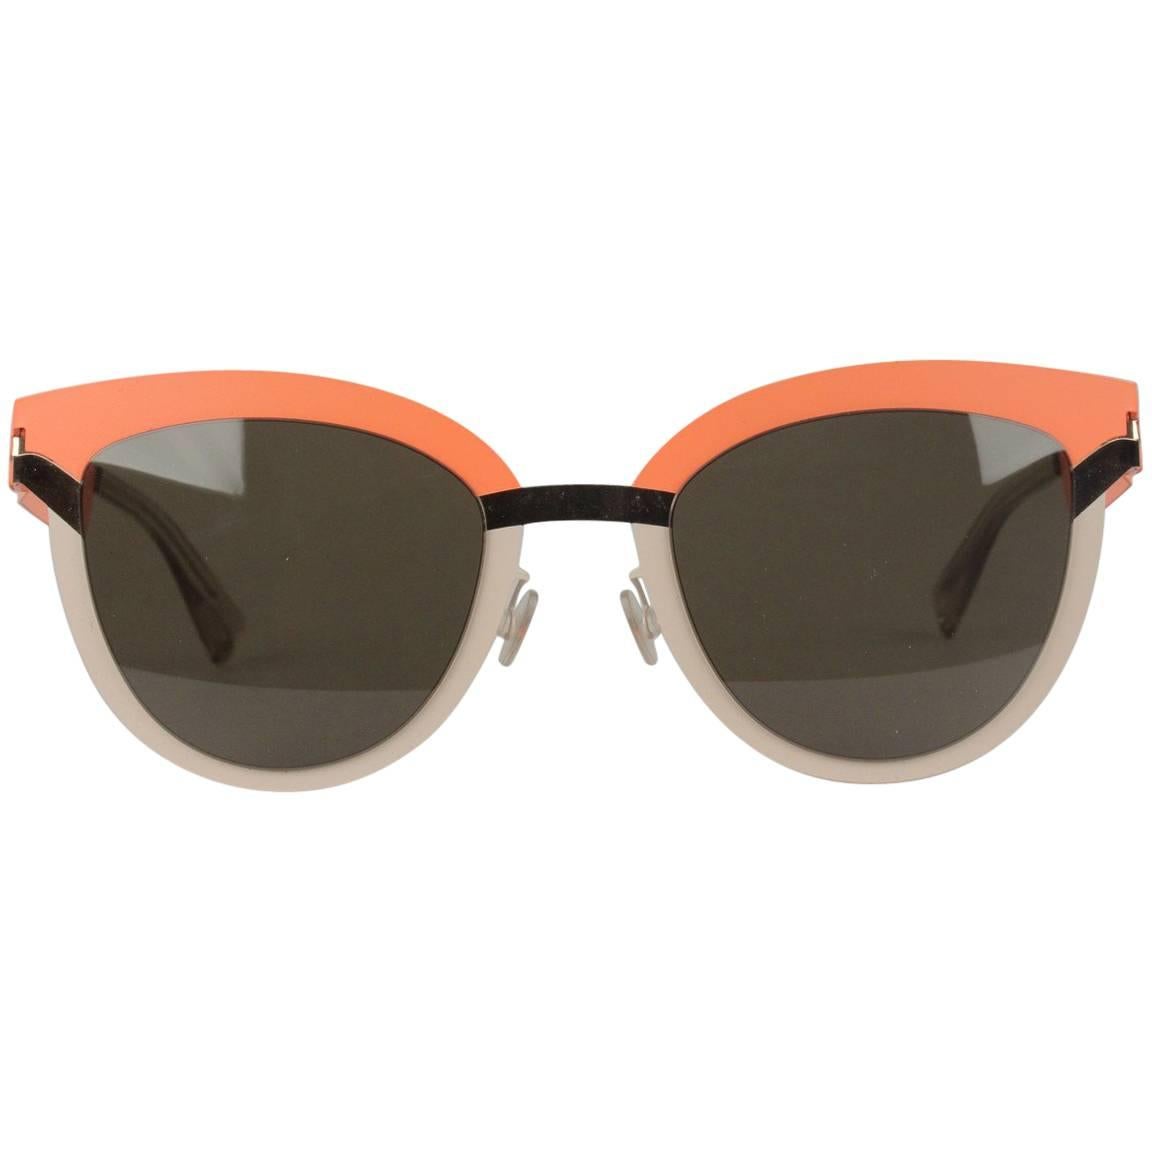 MYKITA STUDIO Mint Sunglasses S8 Tangerine Desert Modules Green Lens